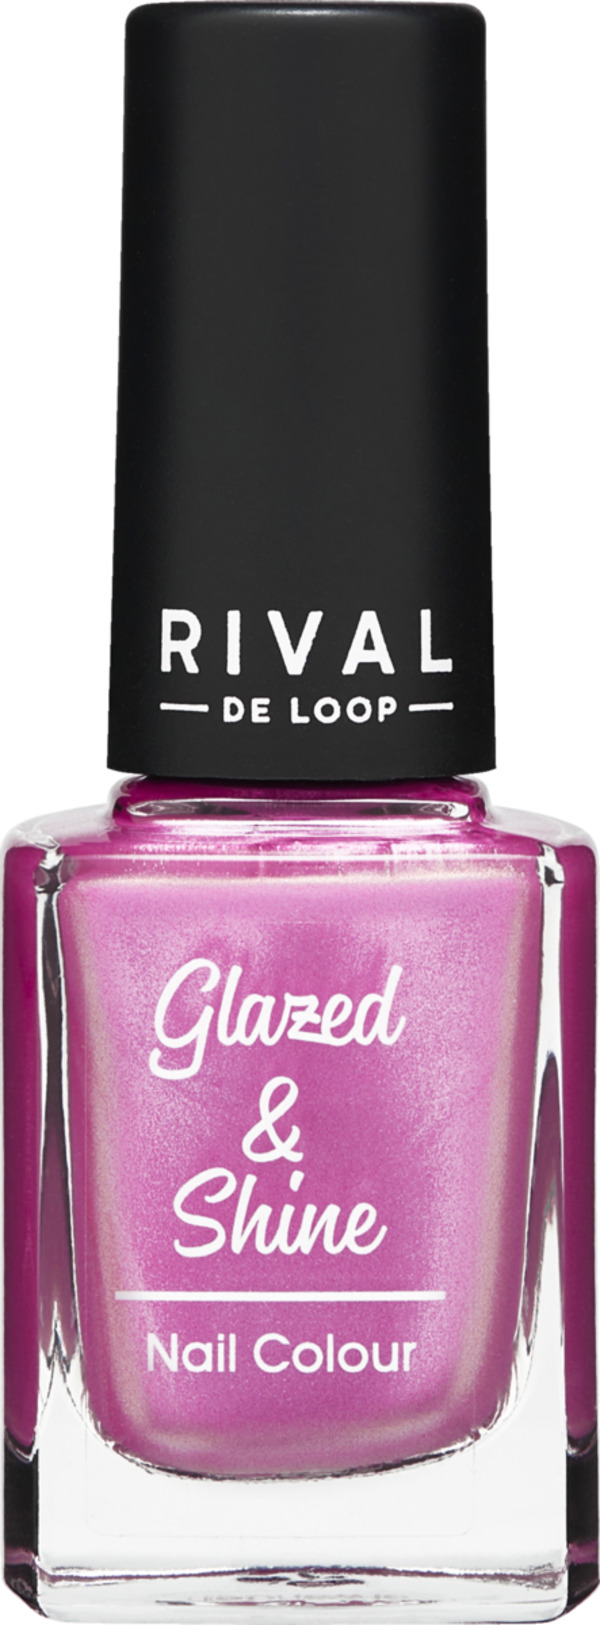 Bild 1 von RIVAL DE LOOP Glazed & Shine 07 Nail Colour